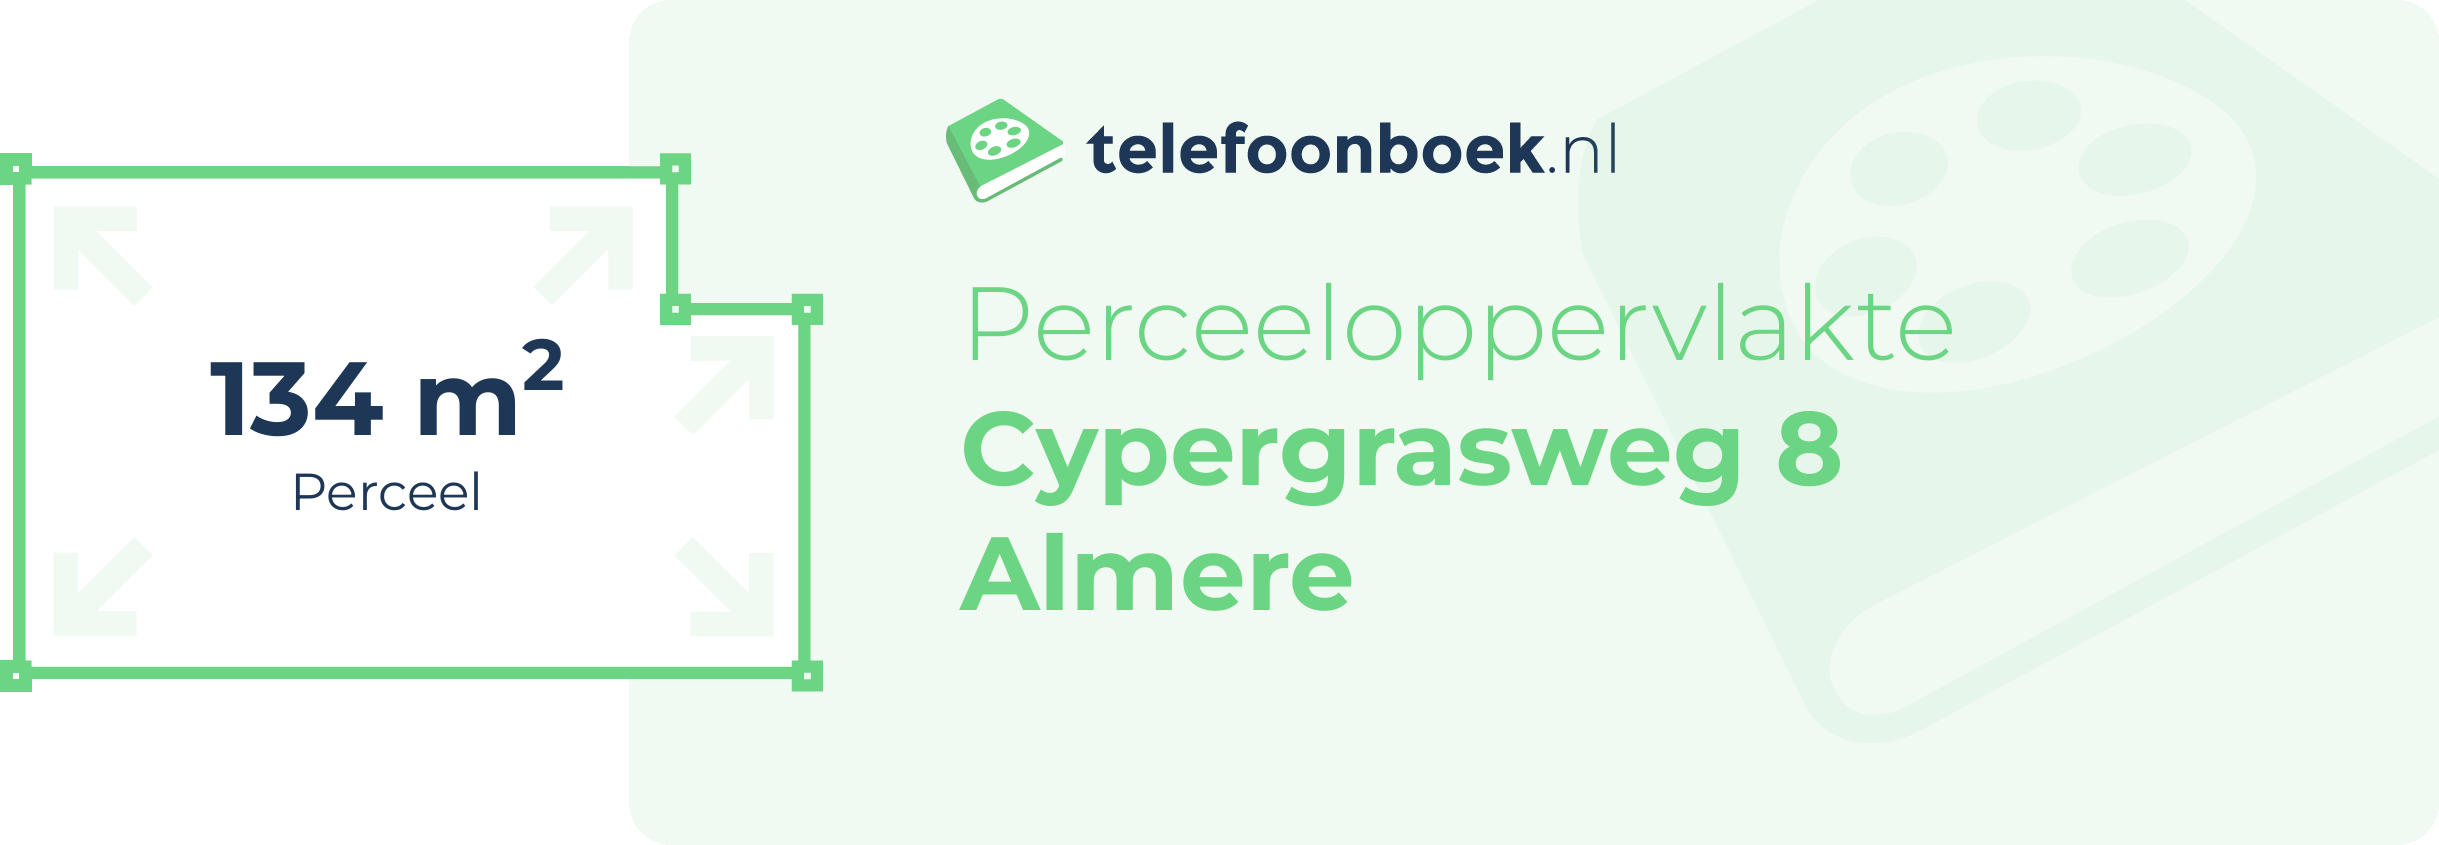 Perceeloppervlakte Cypergrasweg 8 Almere